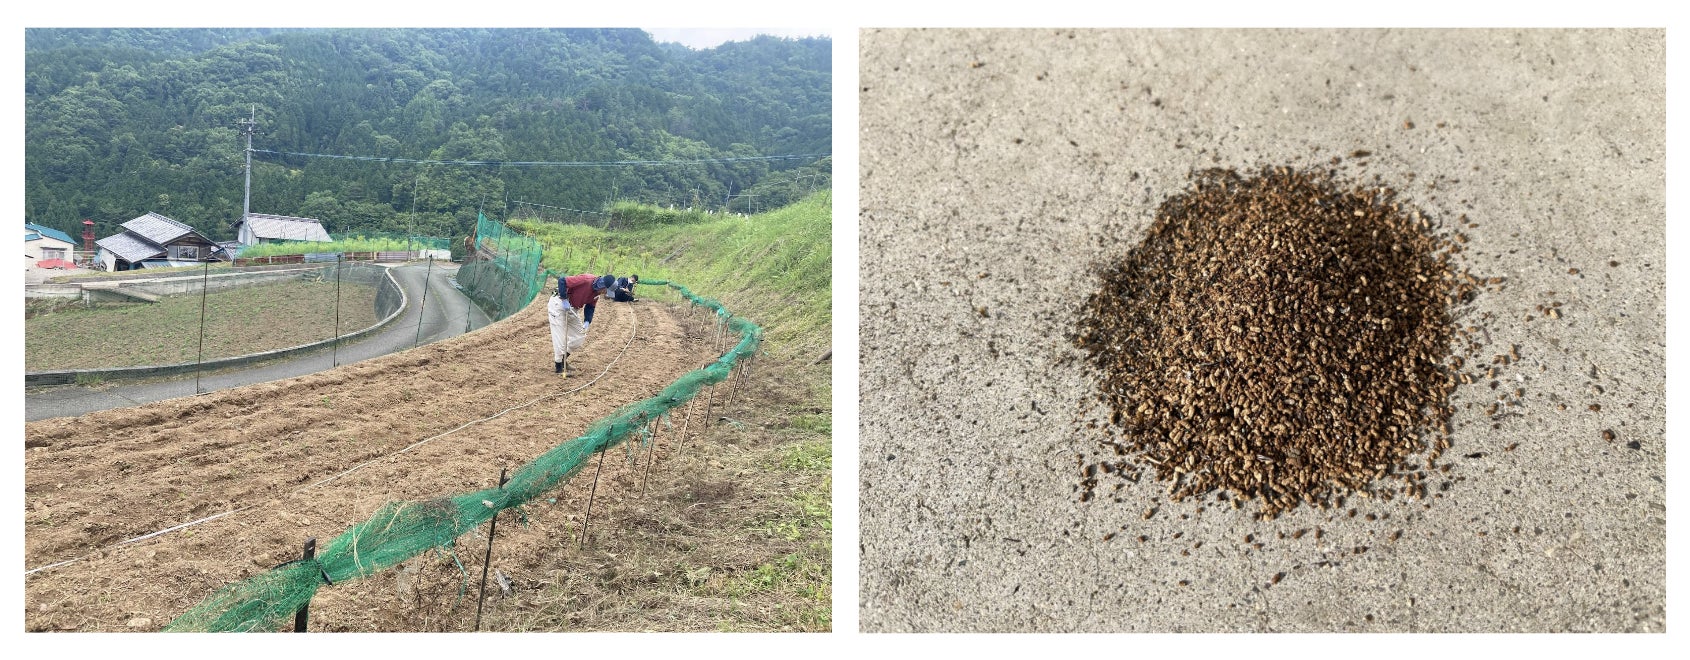 循環型の食料生産に向けてコオロギ飼育残渣の肥料効果を検証、「コオロギフラス」の農業肥料活用を目指した実証実験のサブ画像1_左：田口農園 徳島、右：コオロギフラス